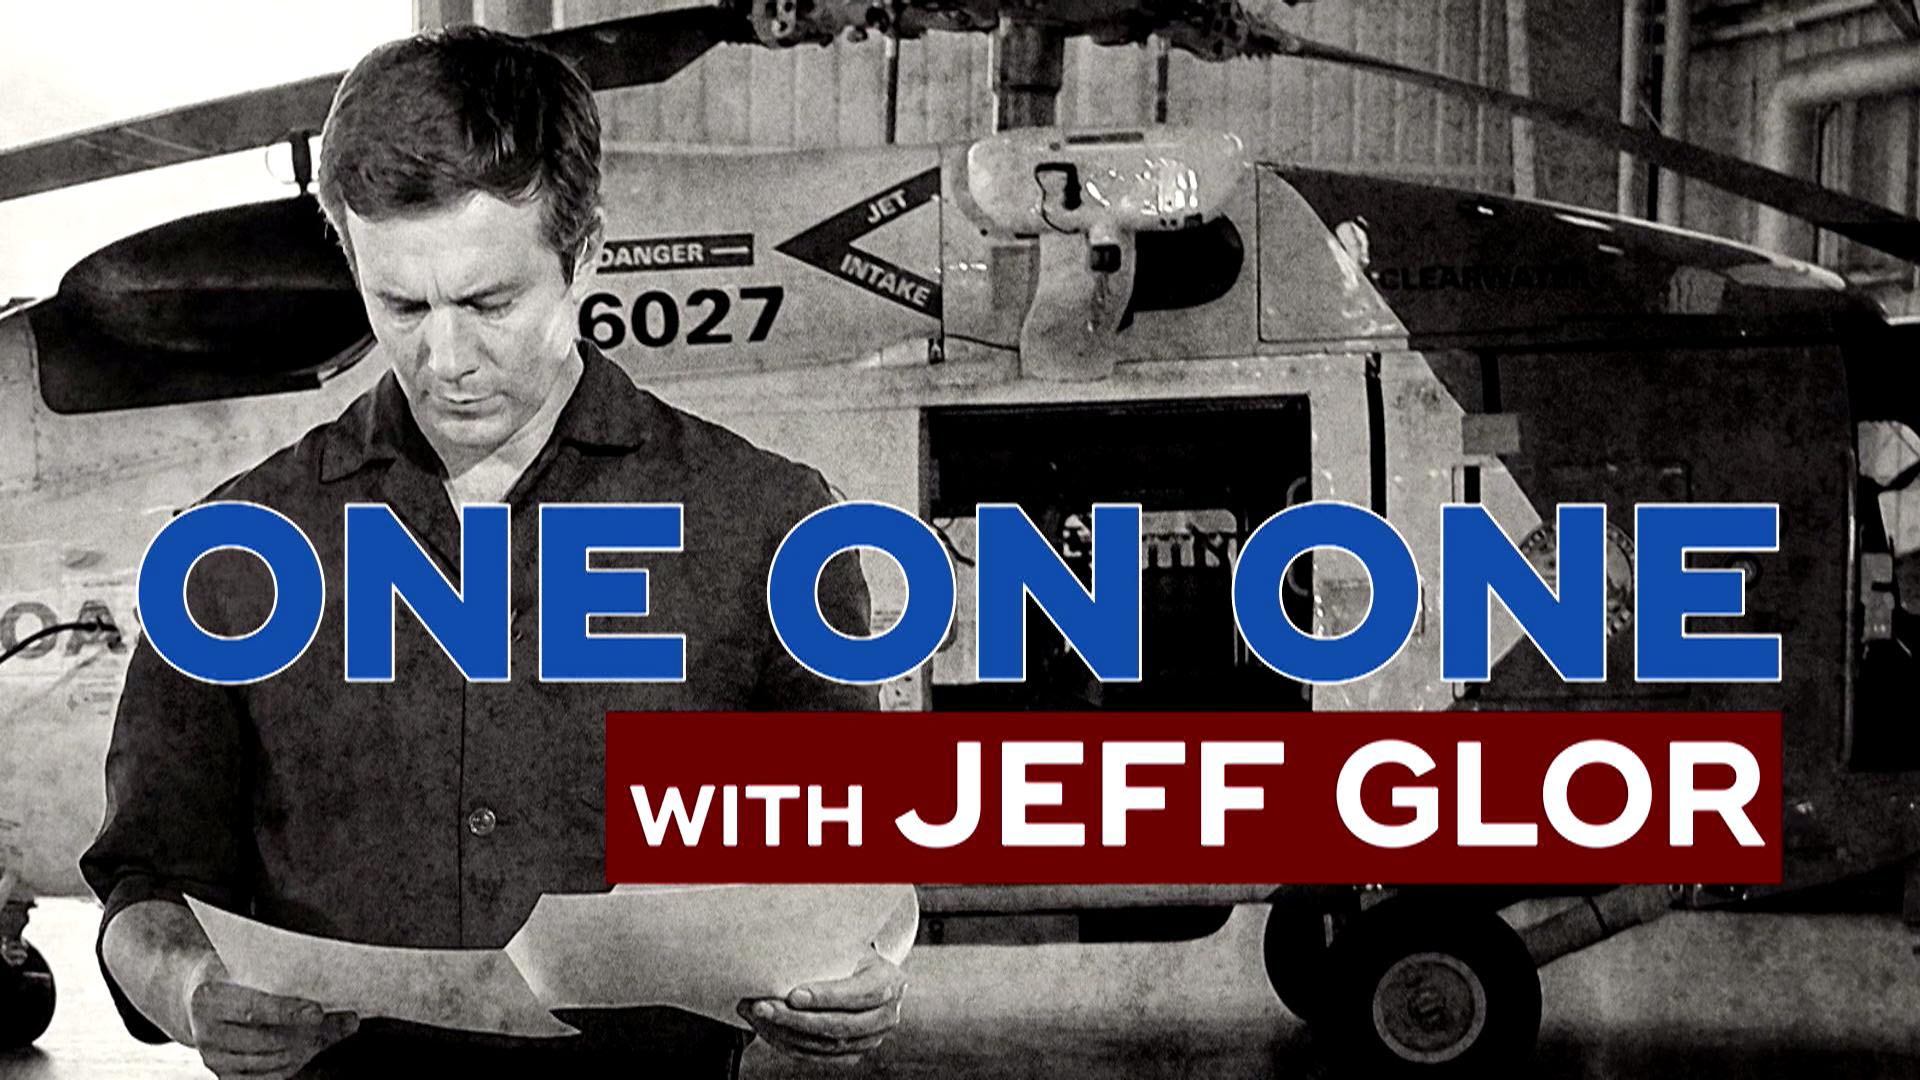 Watch Cbs Evening News Meet Jeff Glor Full Show On All Access